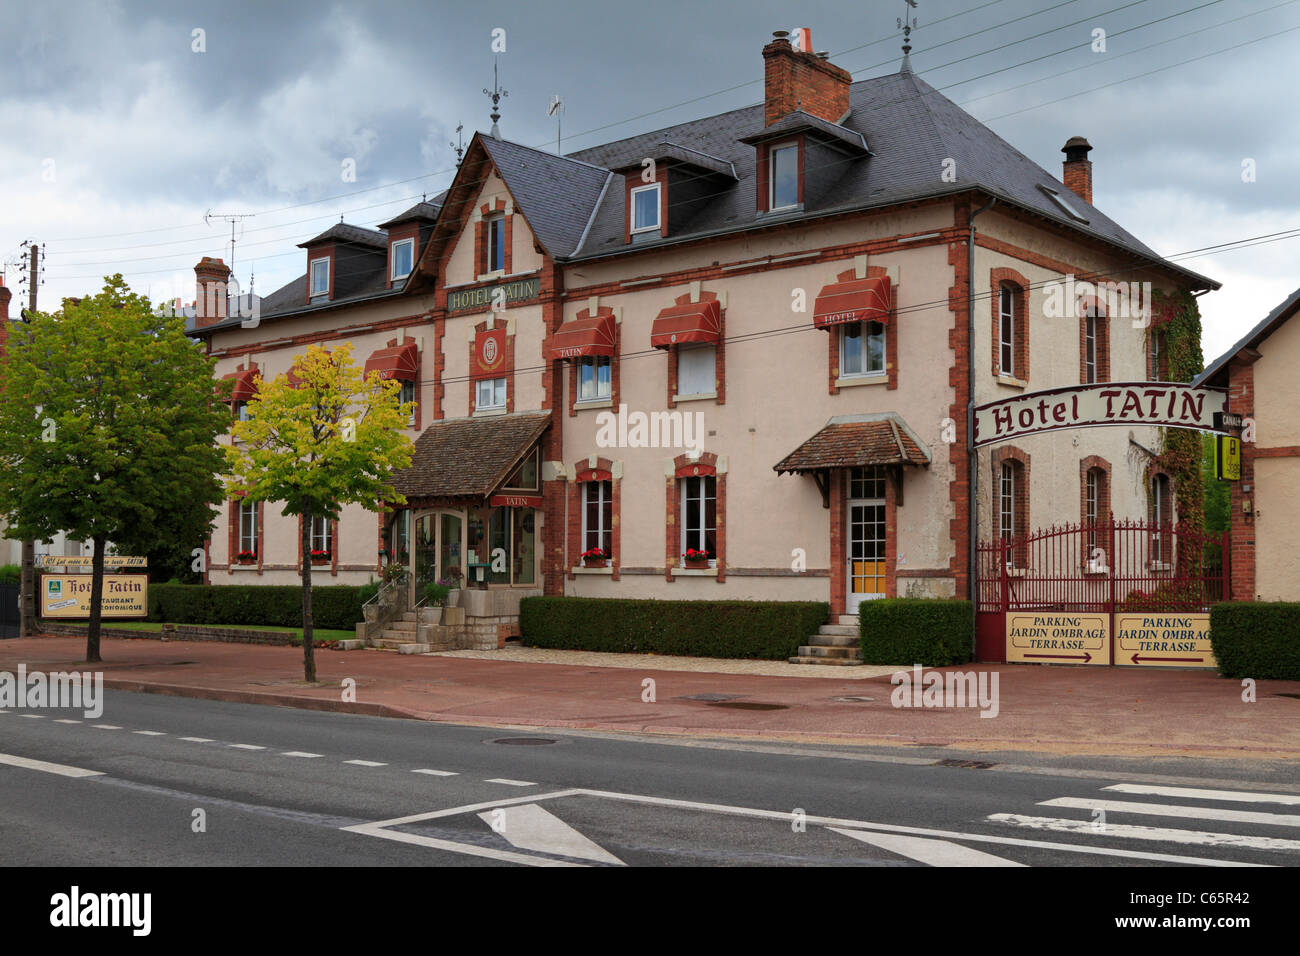 Hôtel Tatin Tarte Tatin où a été créé la première fois en 1889, Lamotte Beuvron, Angouleme, France. Banque D'Images